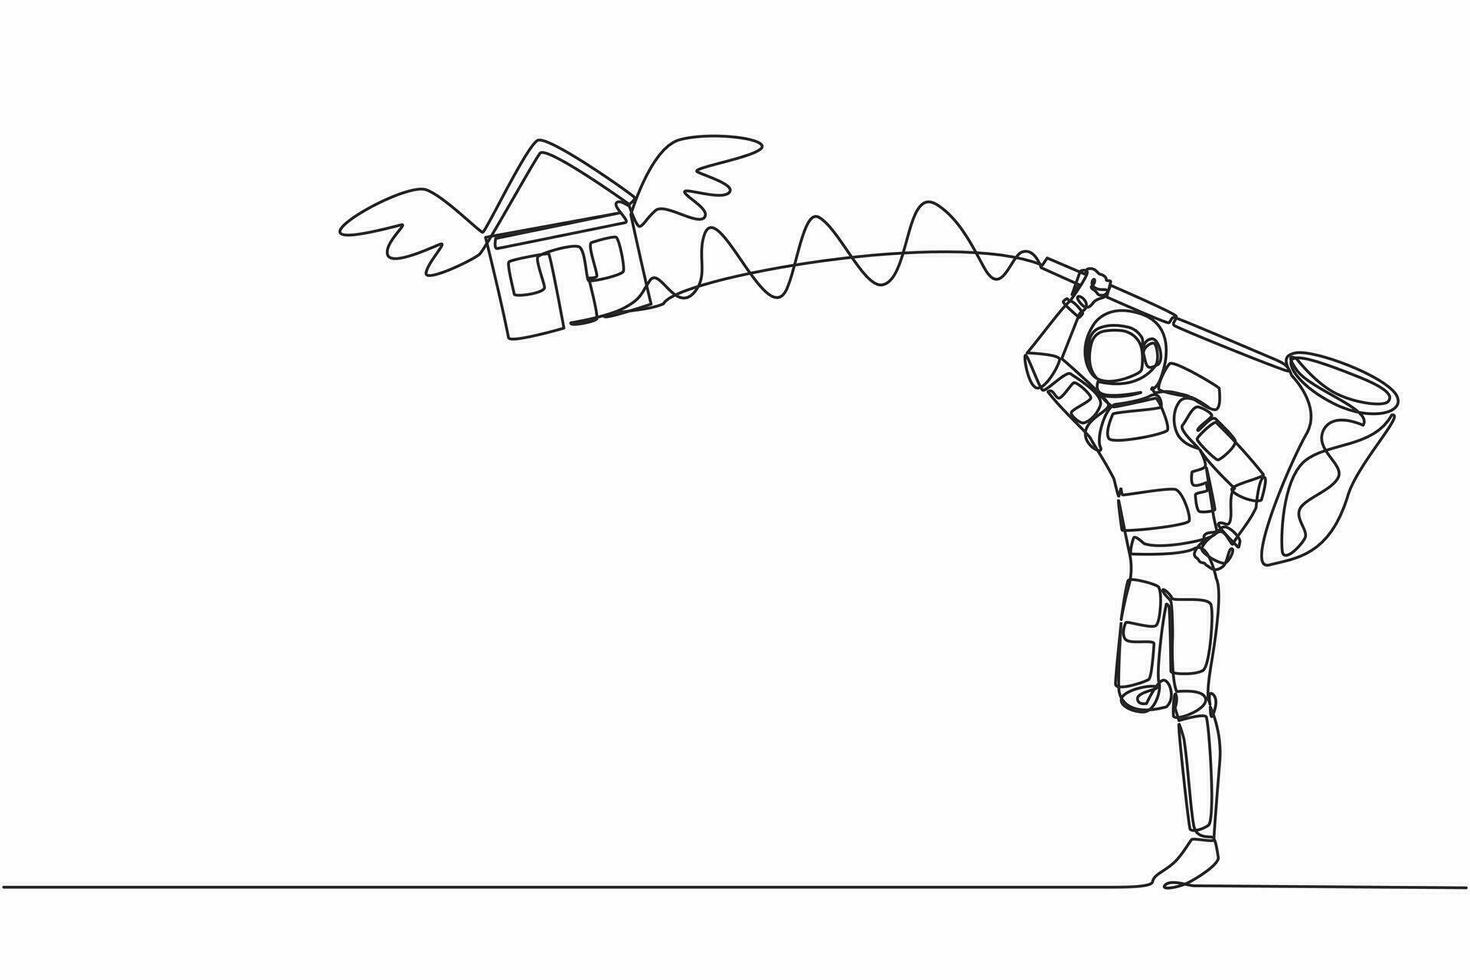 soltero continuo línea dibujo joven astronauta tratar a atrapando volador casa con mariposa neto. precio alojamiento préstamo en otro planetas cosmonauta profundo espacio. uno línea diseño vector gráfico ilustración